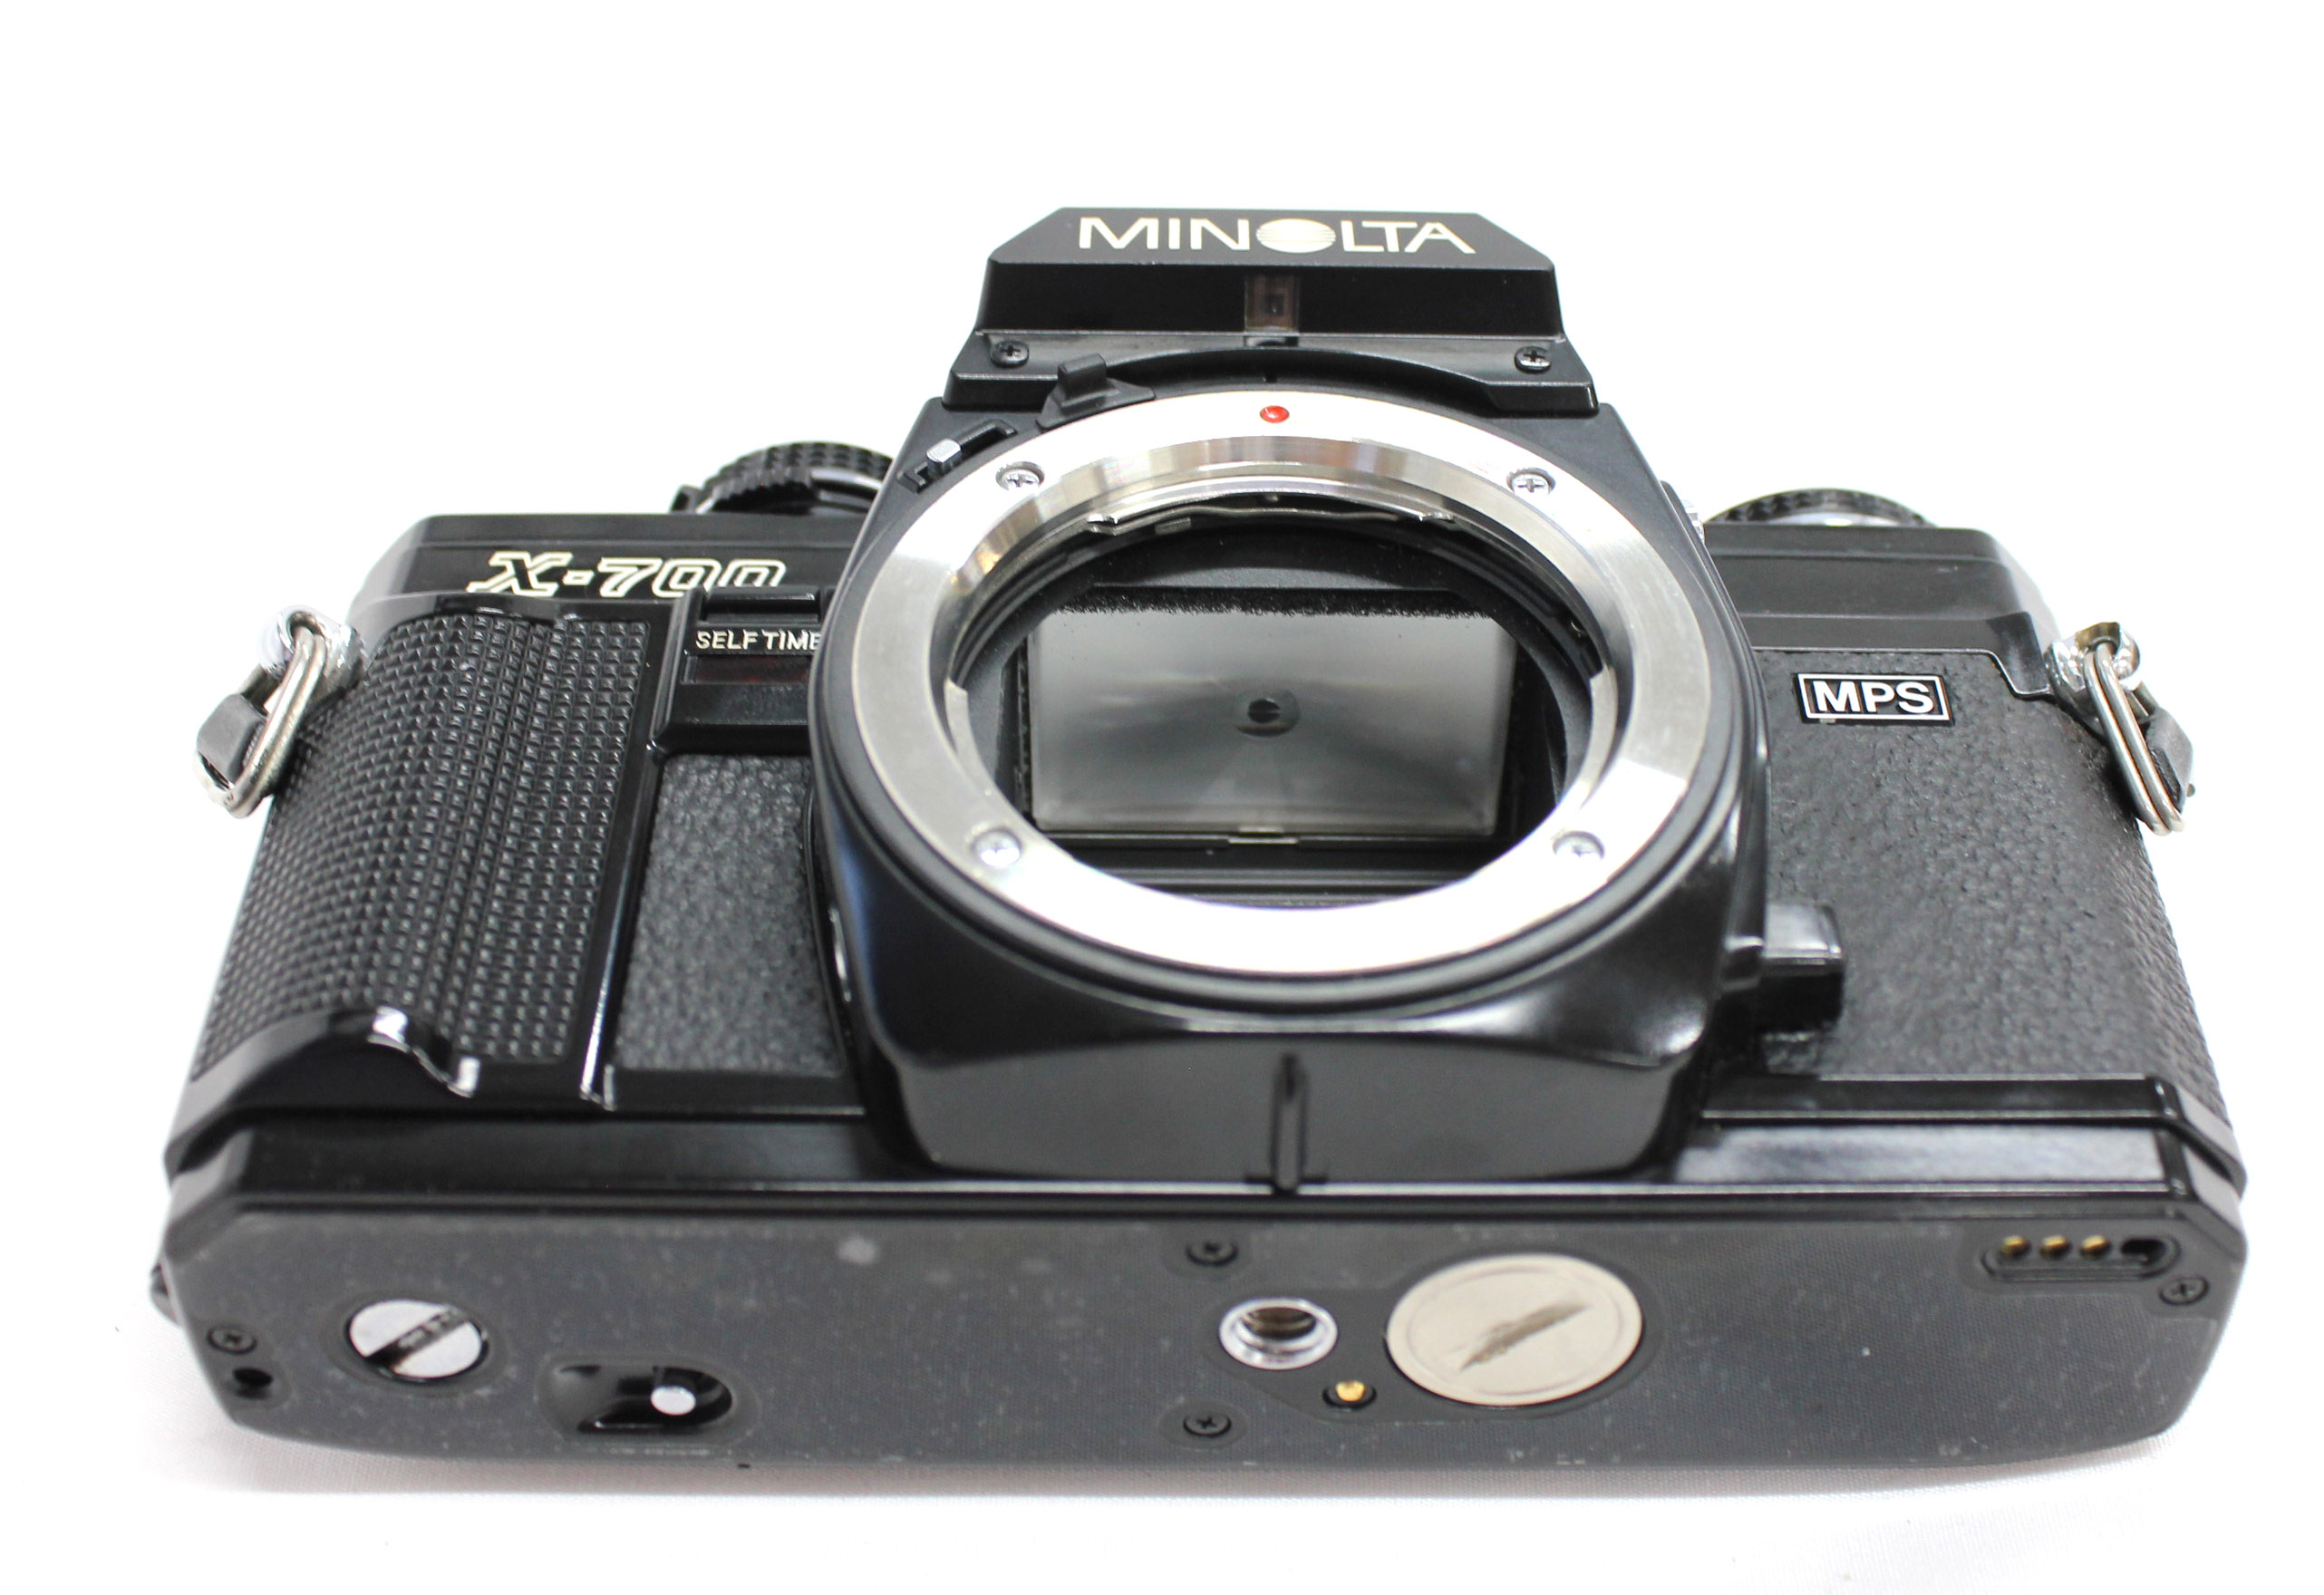 Minolta X-700 MPS 35mm SLR Film Camera with MD Rokkor 50mm F1.4 